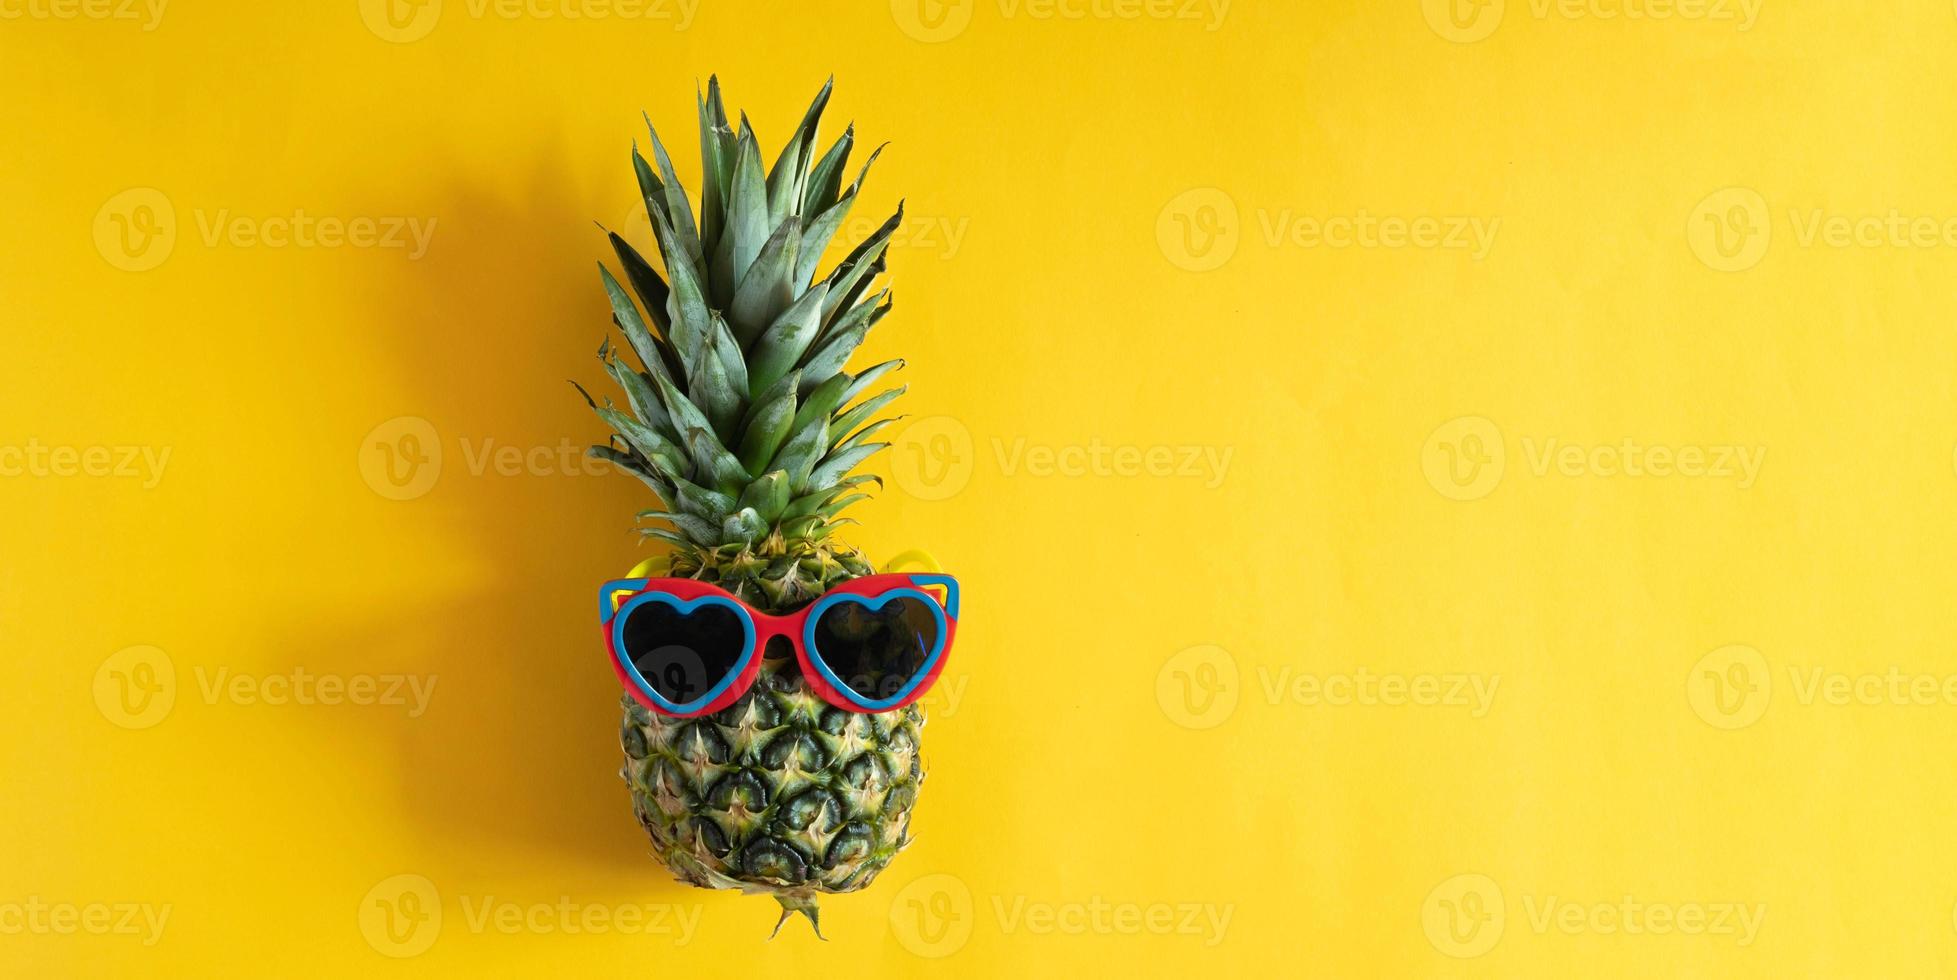 hipster de piña en gafas de sol. concepto mínimo, piña tropical de verano. foto